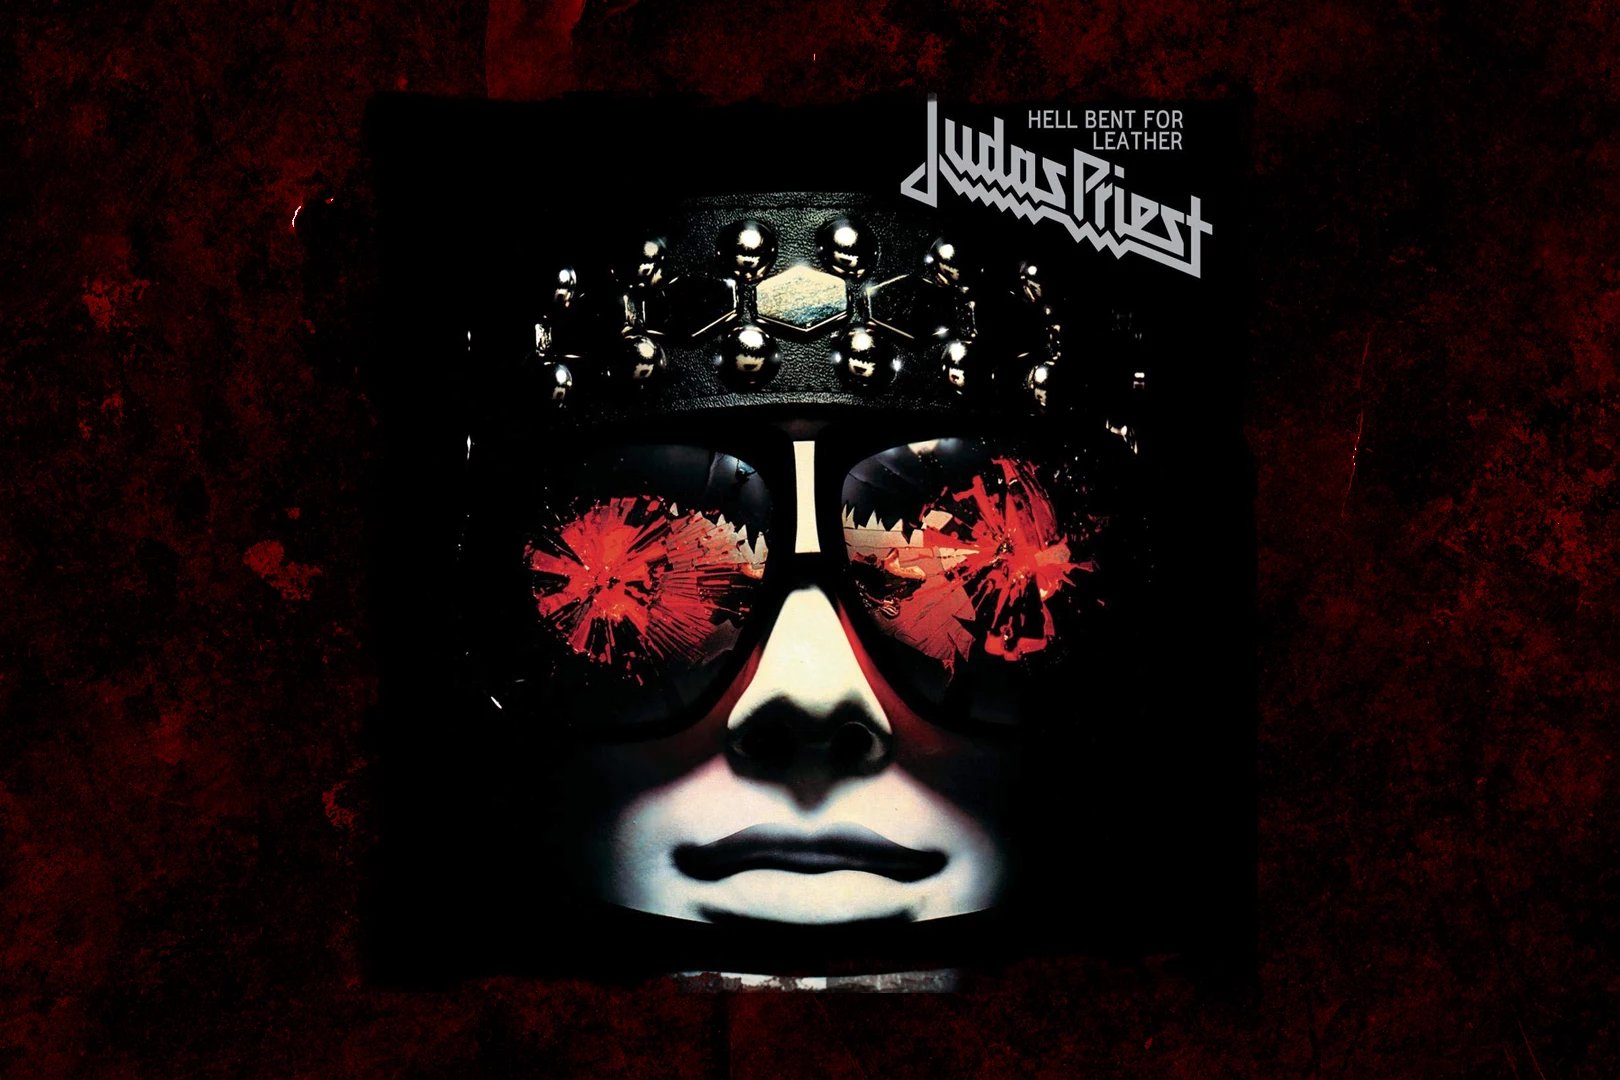 Judas Priest - Cd The Essential Judas Priest. 2015 Update